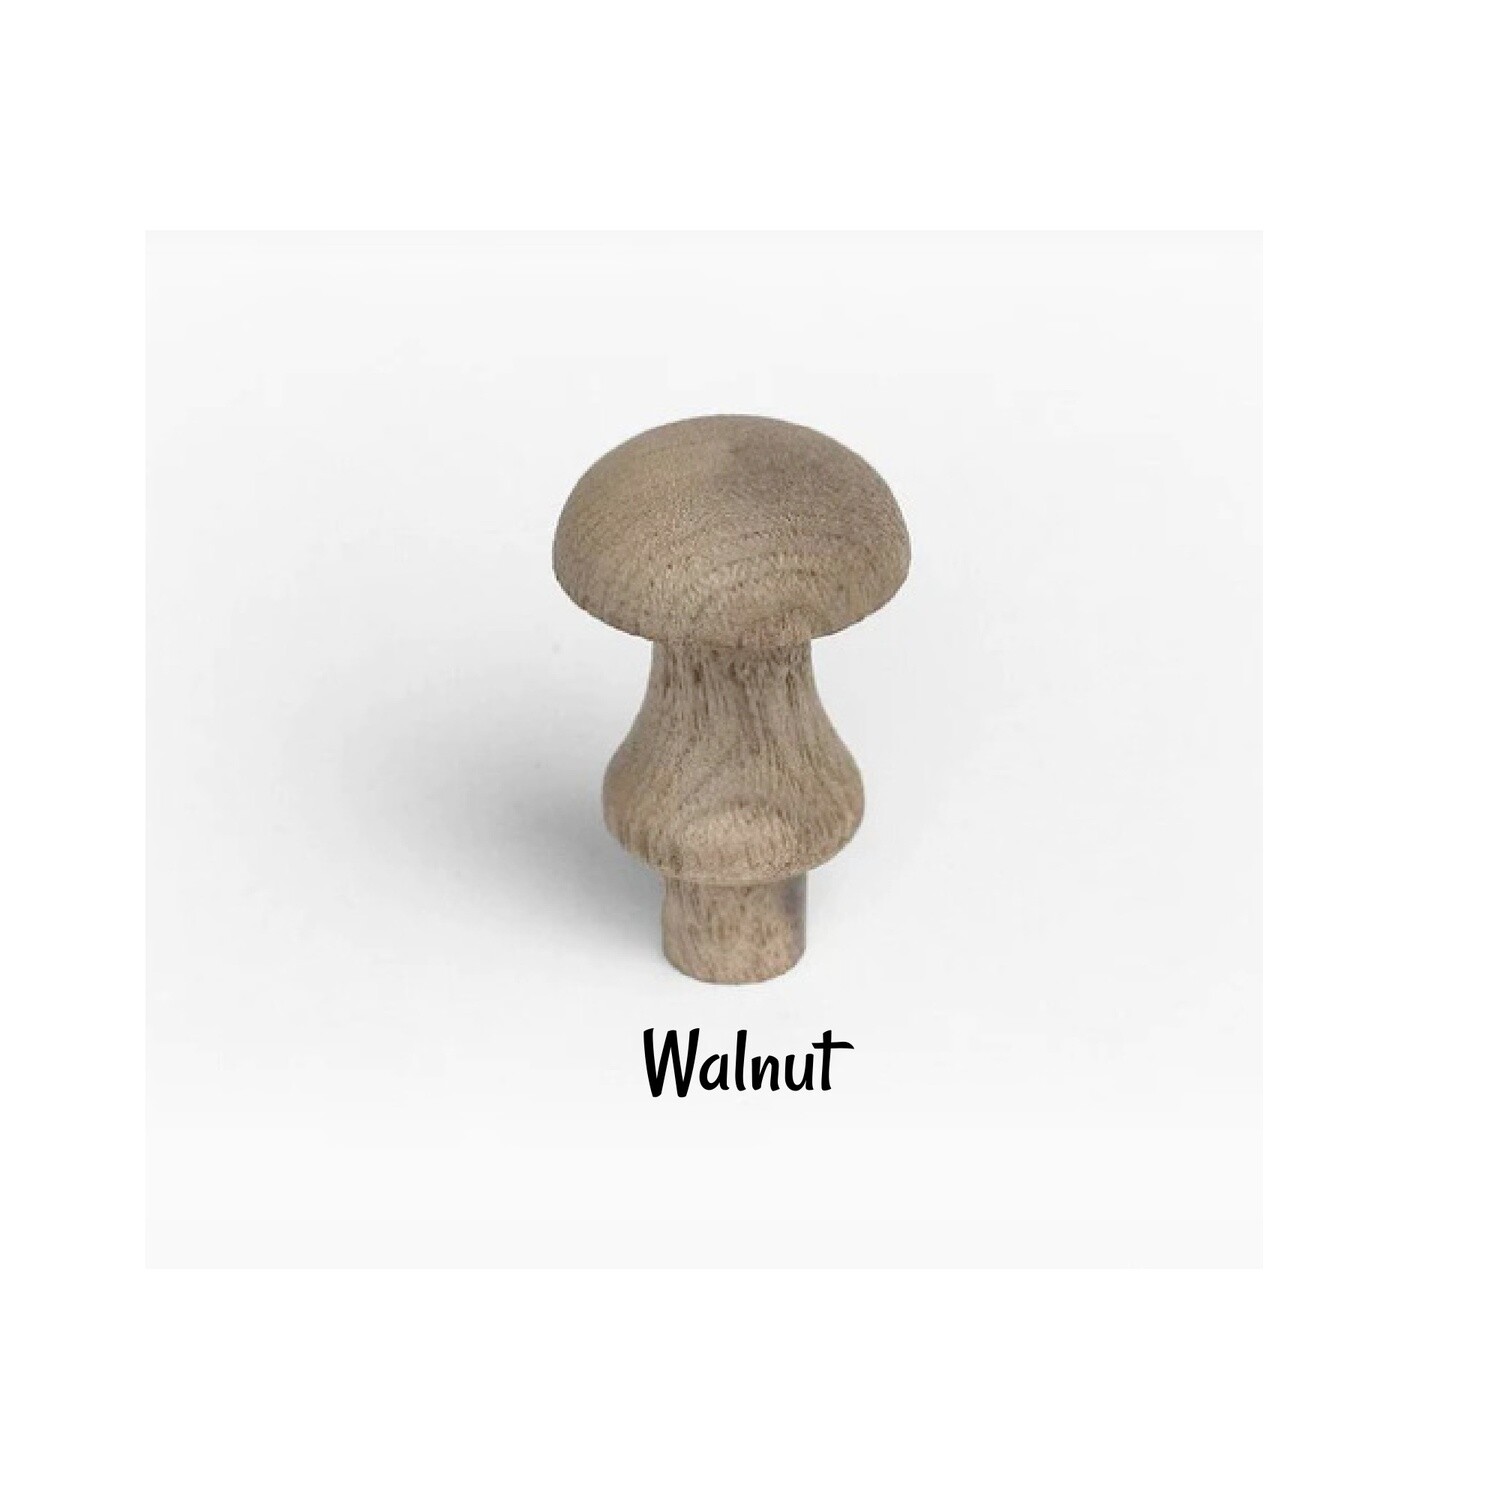 Walnut Wood Shaker Knob - 7/8